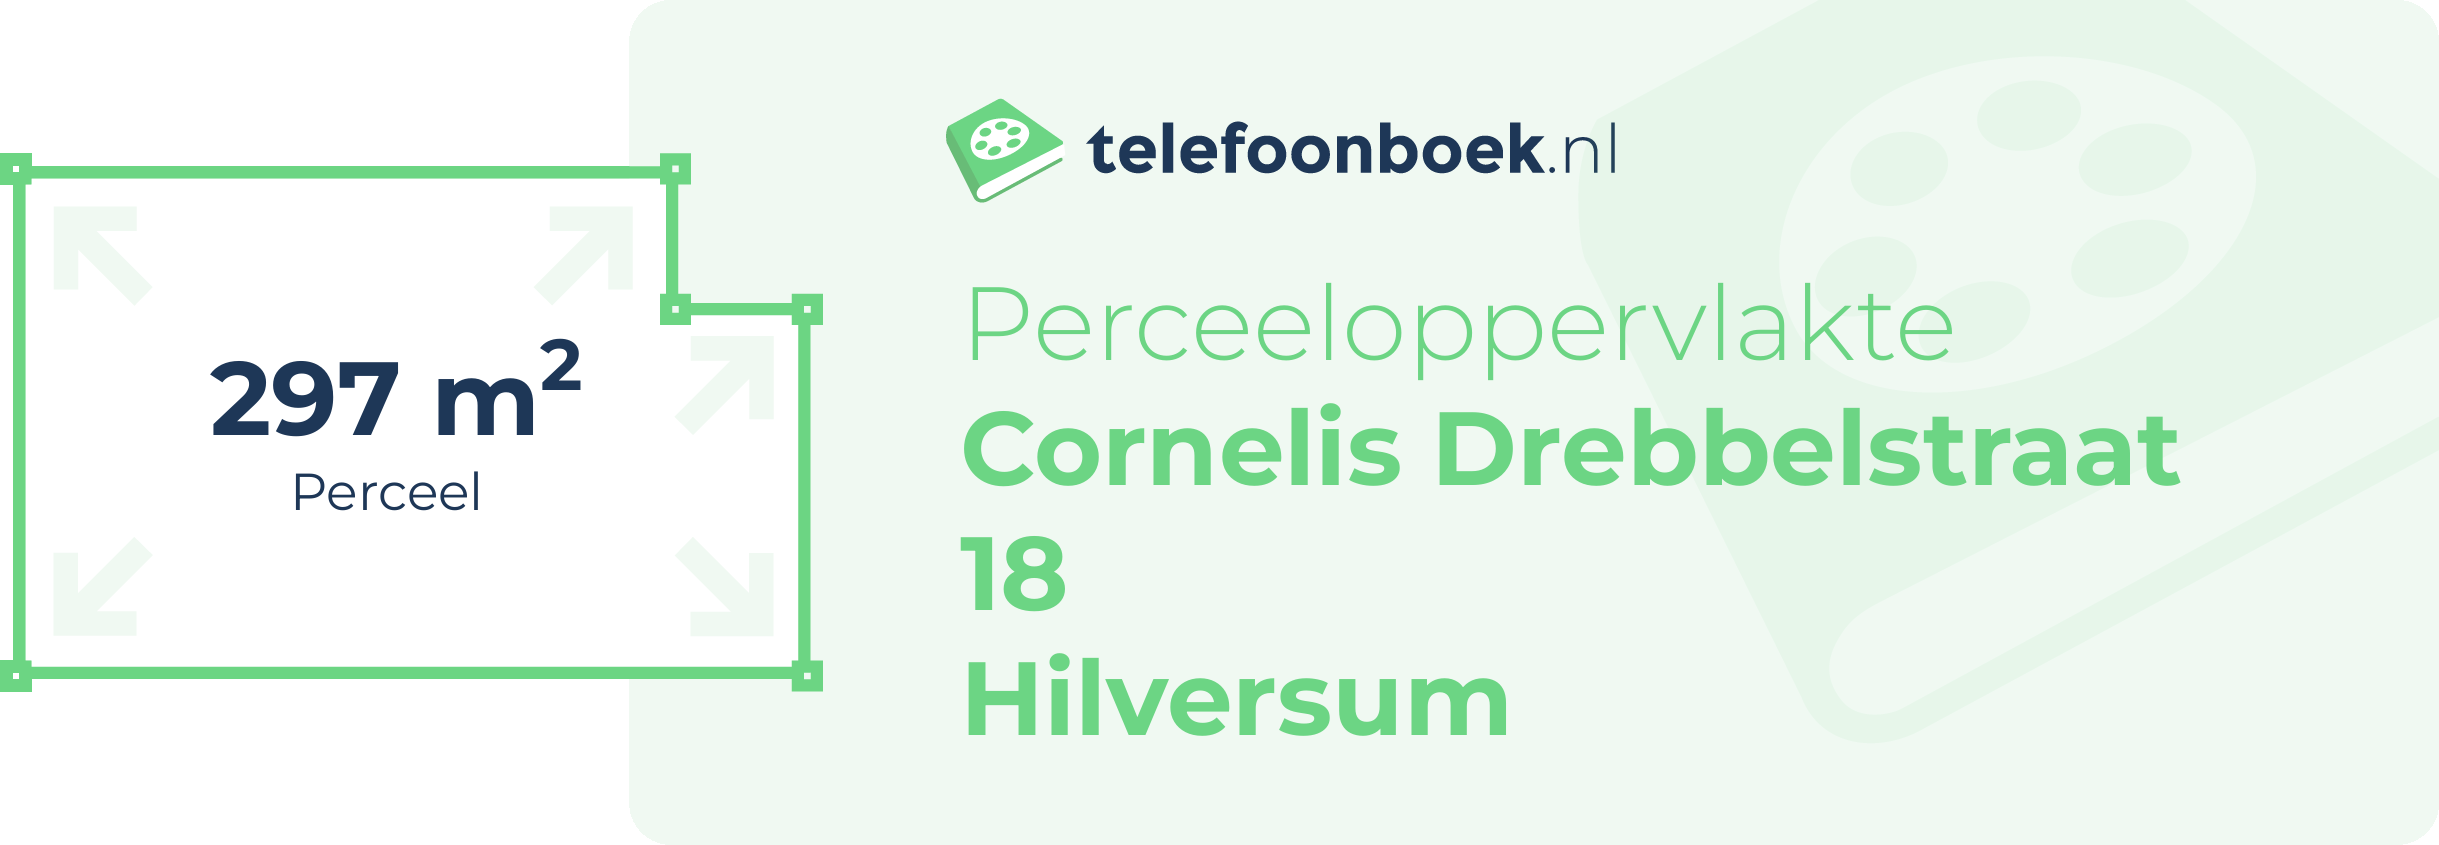 Perceeloppervlakte Cornelis Drebbelstraat 18 Hilversum